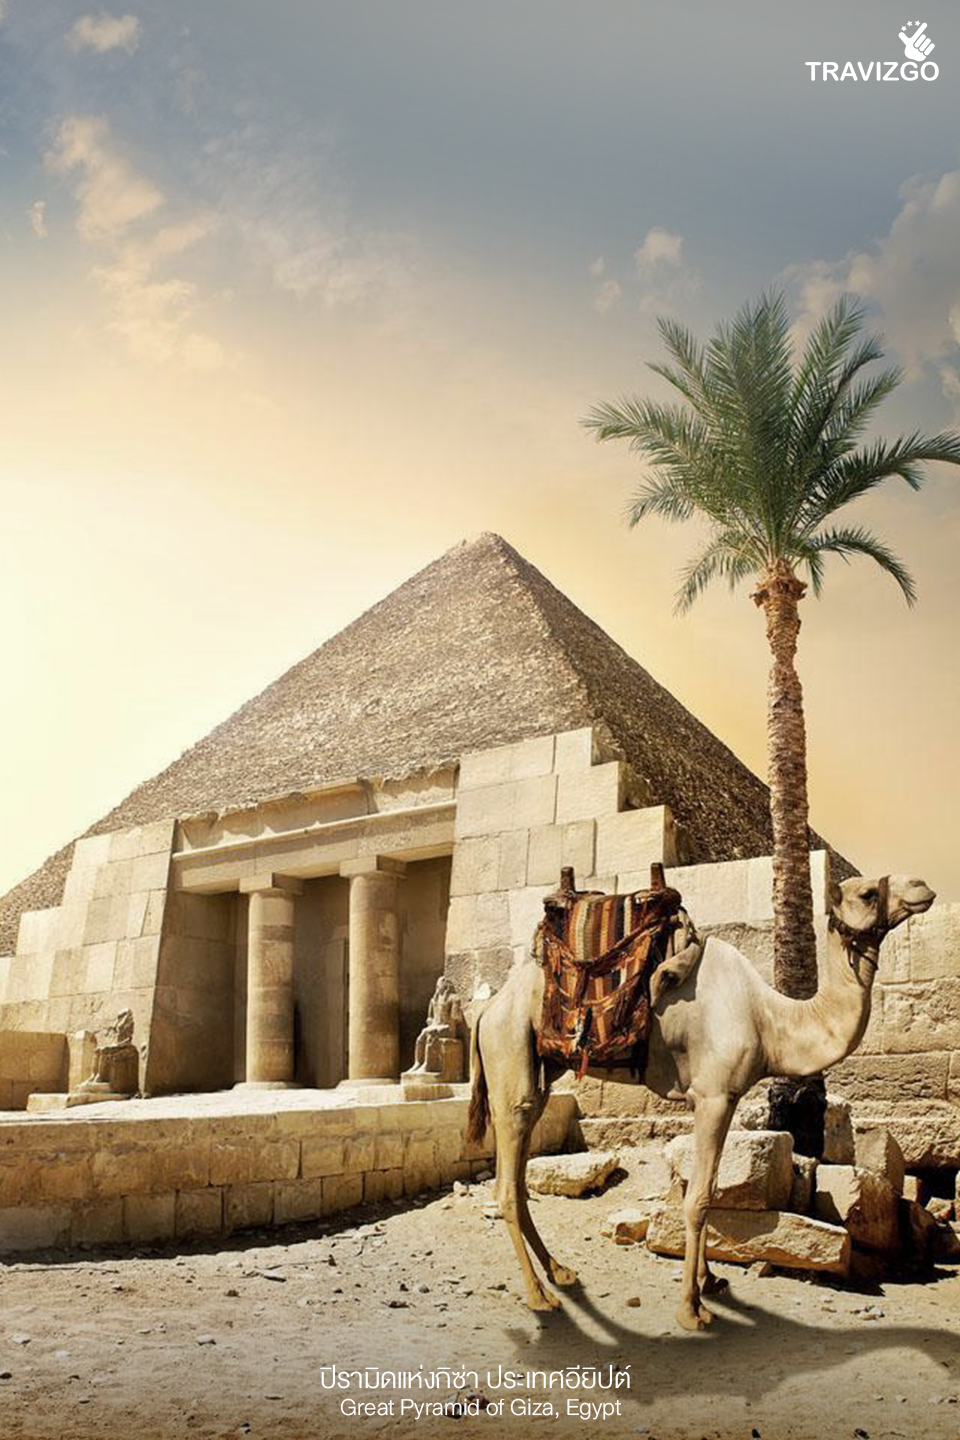 ปิรามิดแห่งกิซ่า ประเทศอียิปต์ (Great Pyramid of Giza, Egypt)